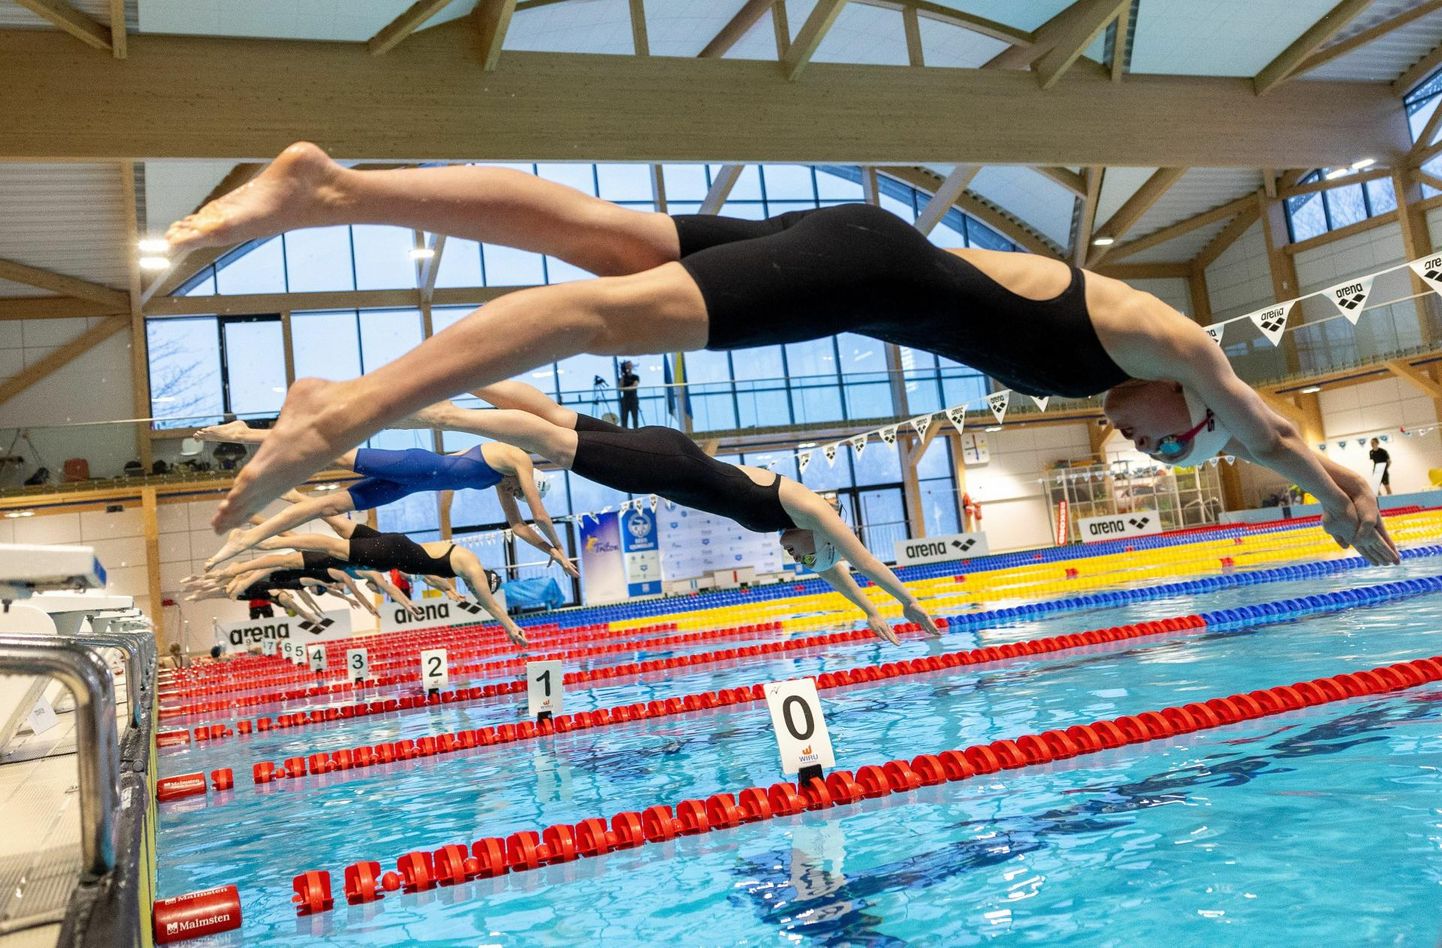 Ujumisklubi Aktiiv keeldus Eesti meistrivõistluste korraldamisest. FOTO: Tairo Lutter